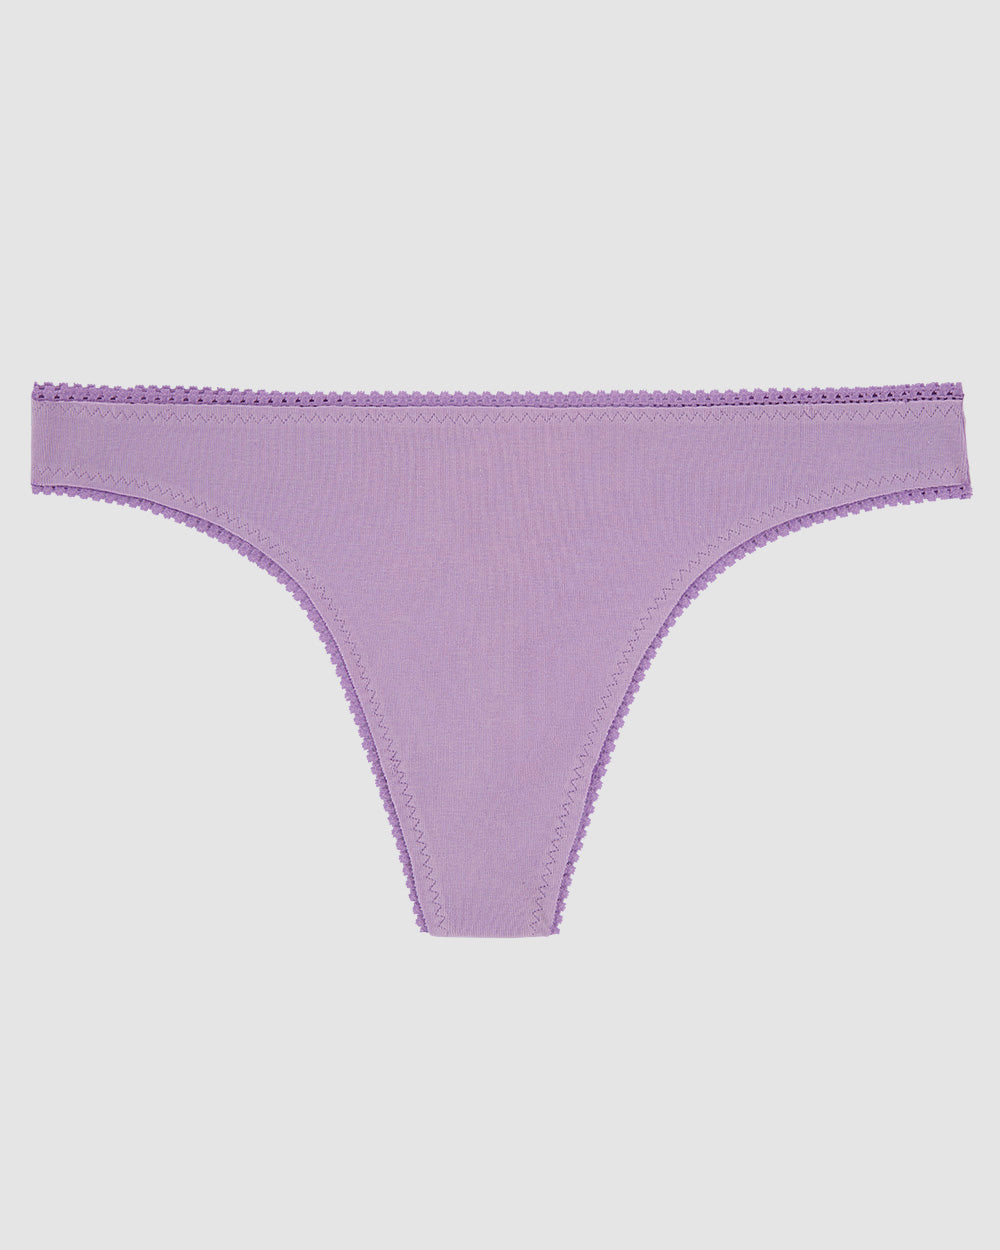 Violet flower Cabana Cotton Hip G Thong Underwear